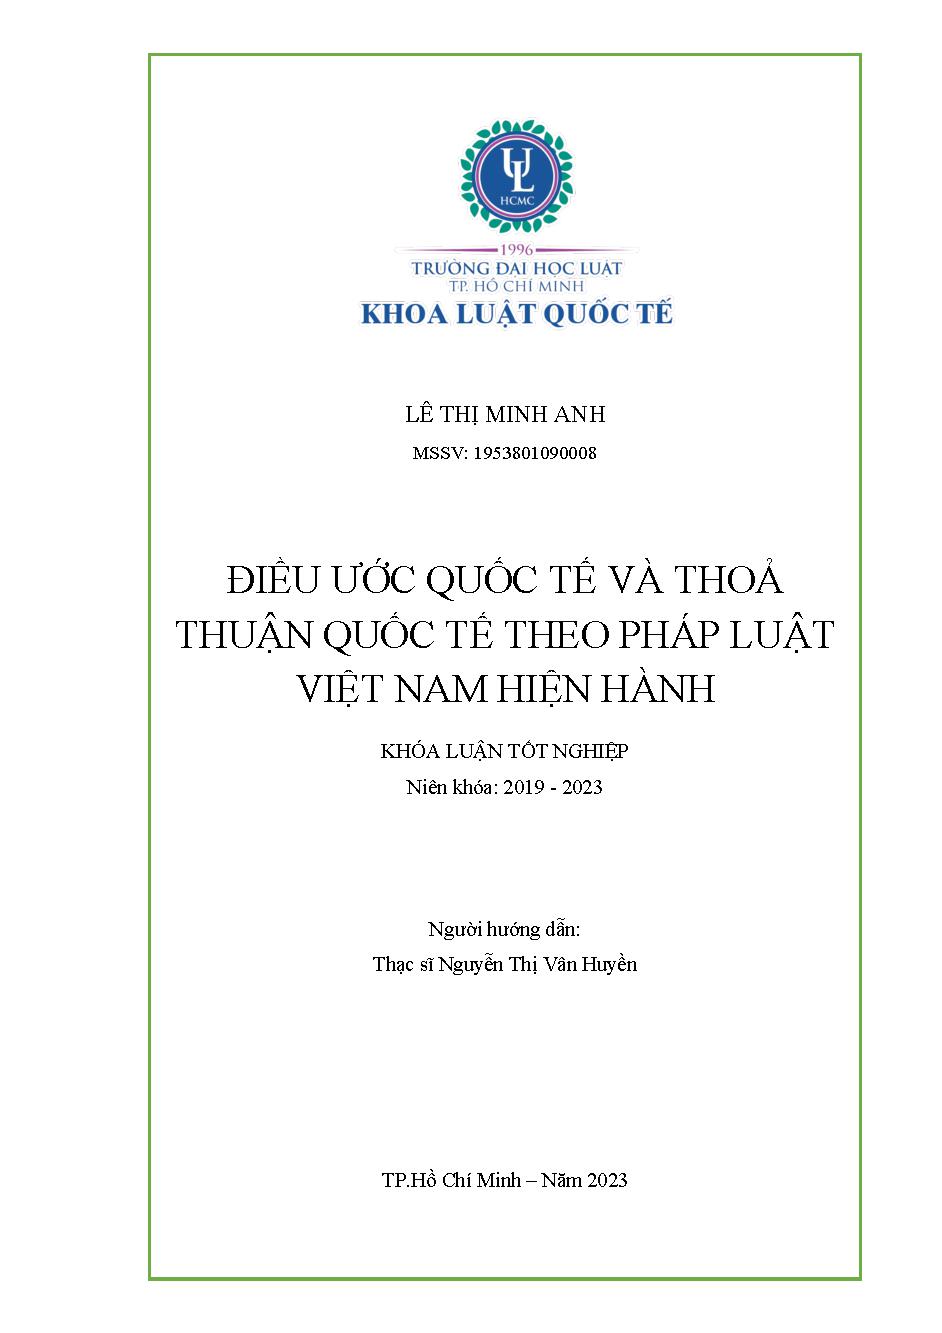 Điều ước quốc tế và thỏa thuận quốc tế theo pháp luật Việt Nam hiện hành